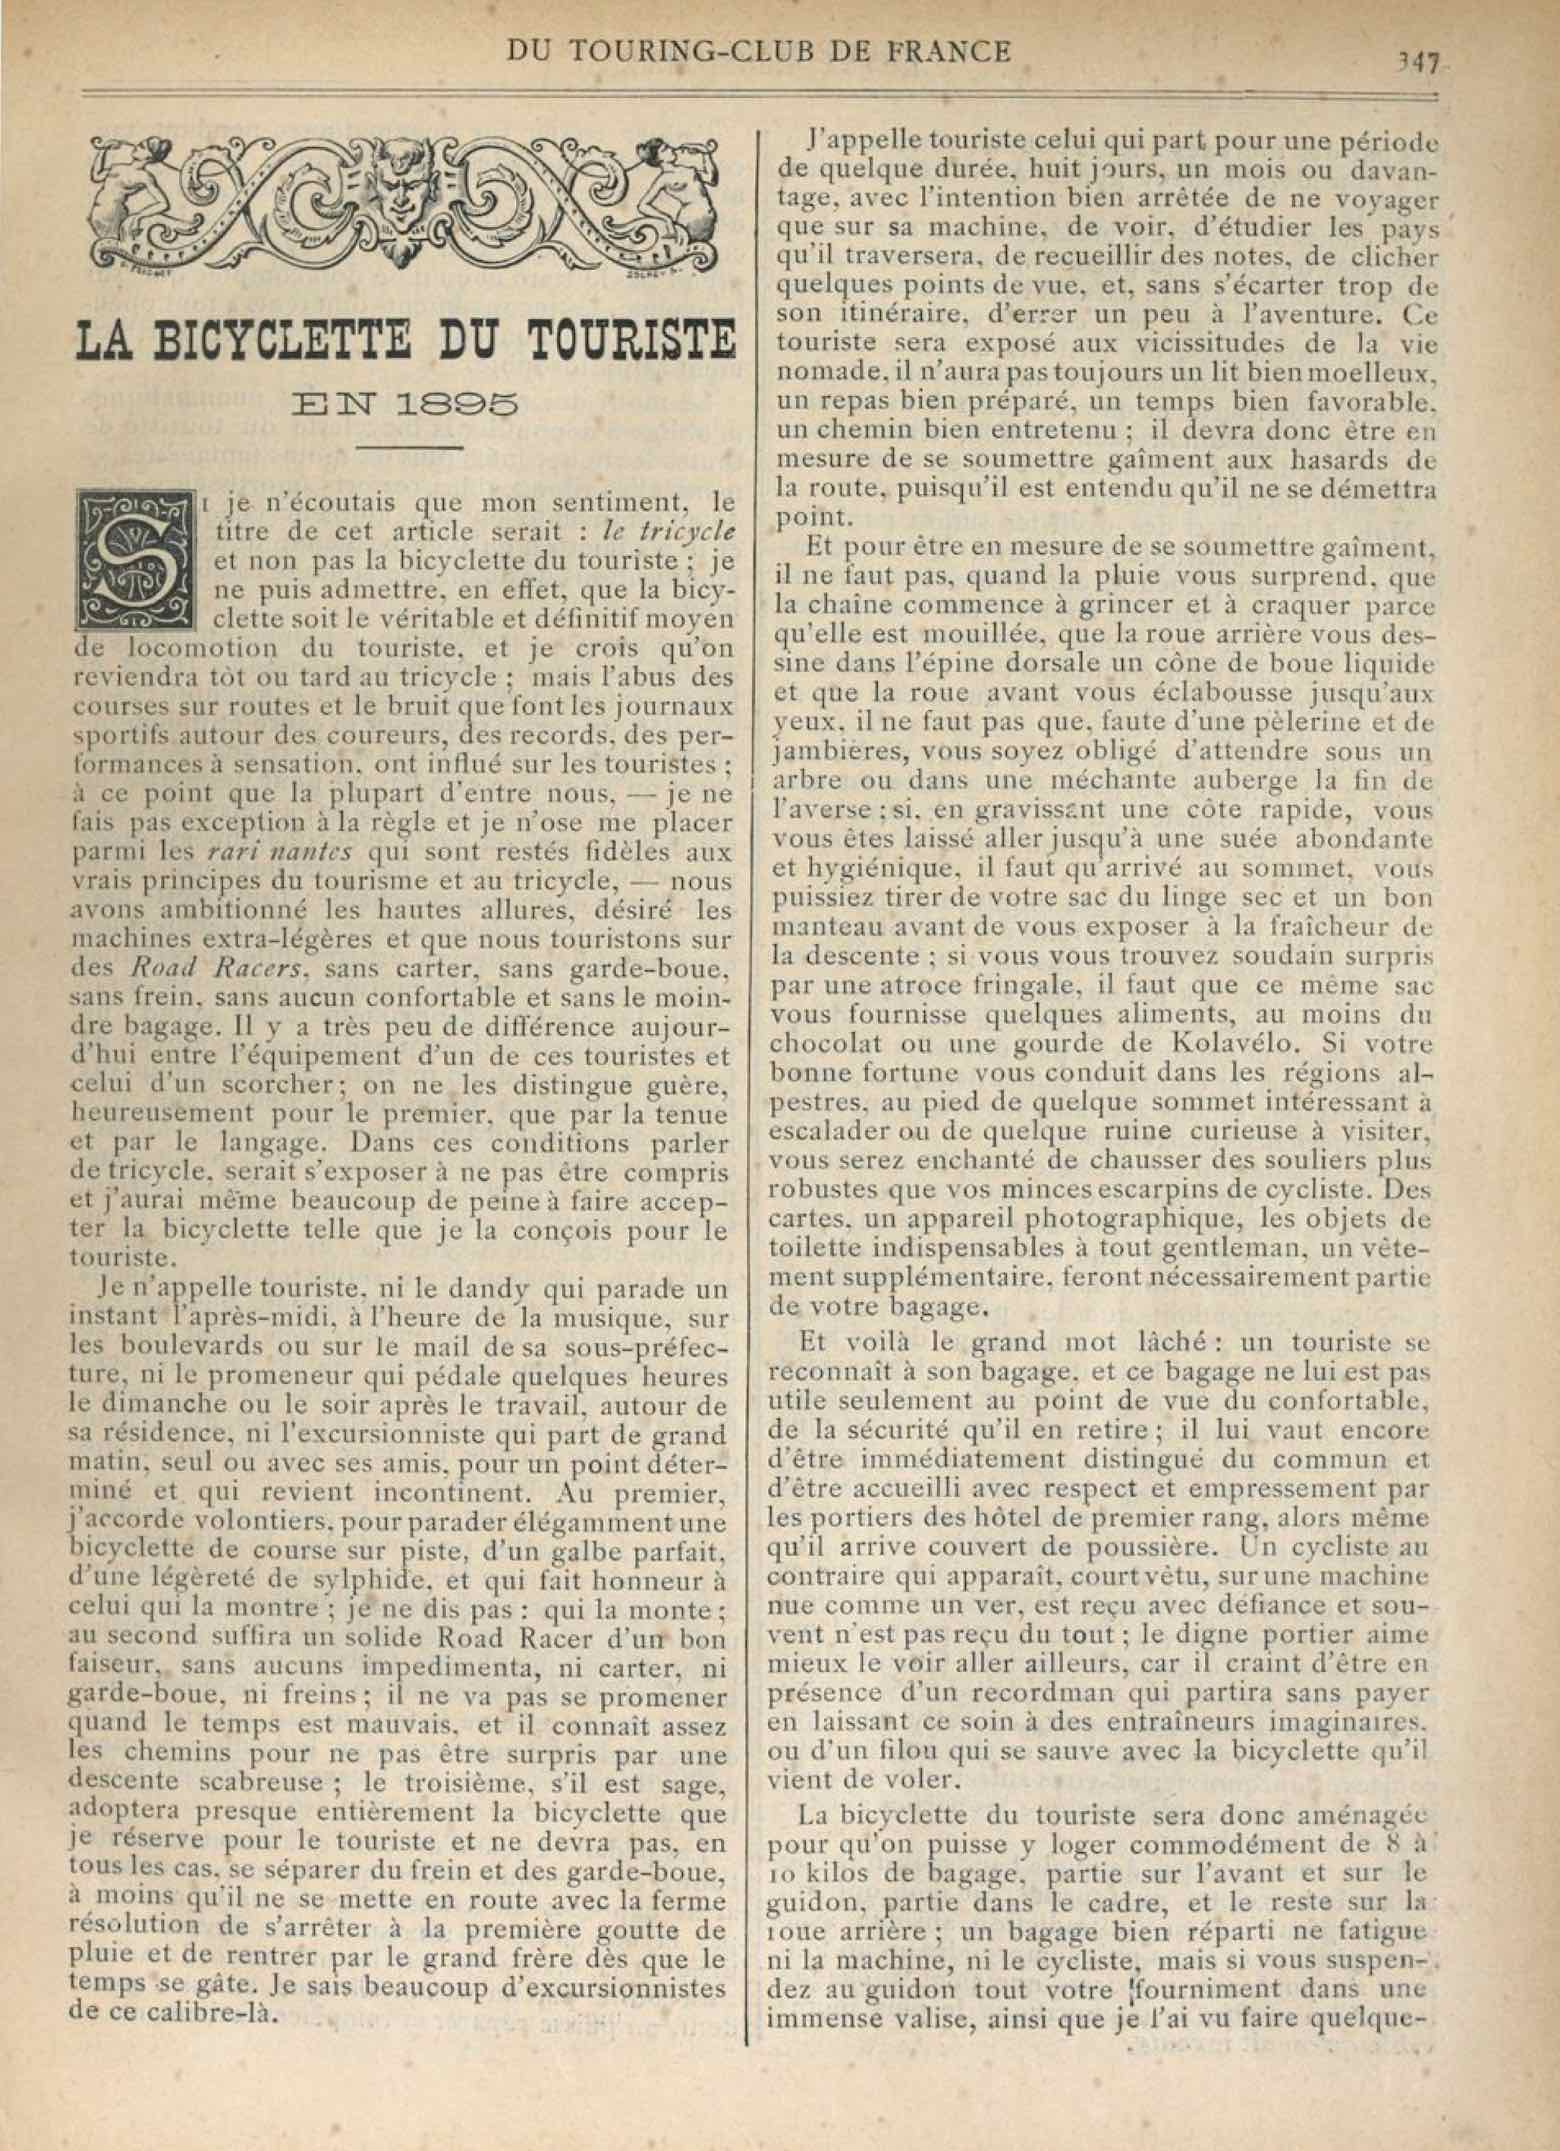 T.C.F. Revue Mensuelle March 1895 - La Bicyclette du Touriste scan 1 main image